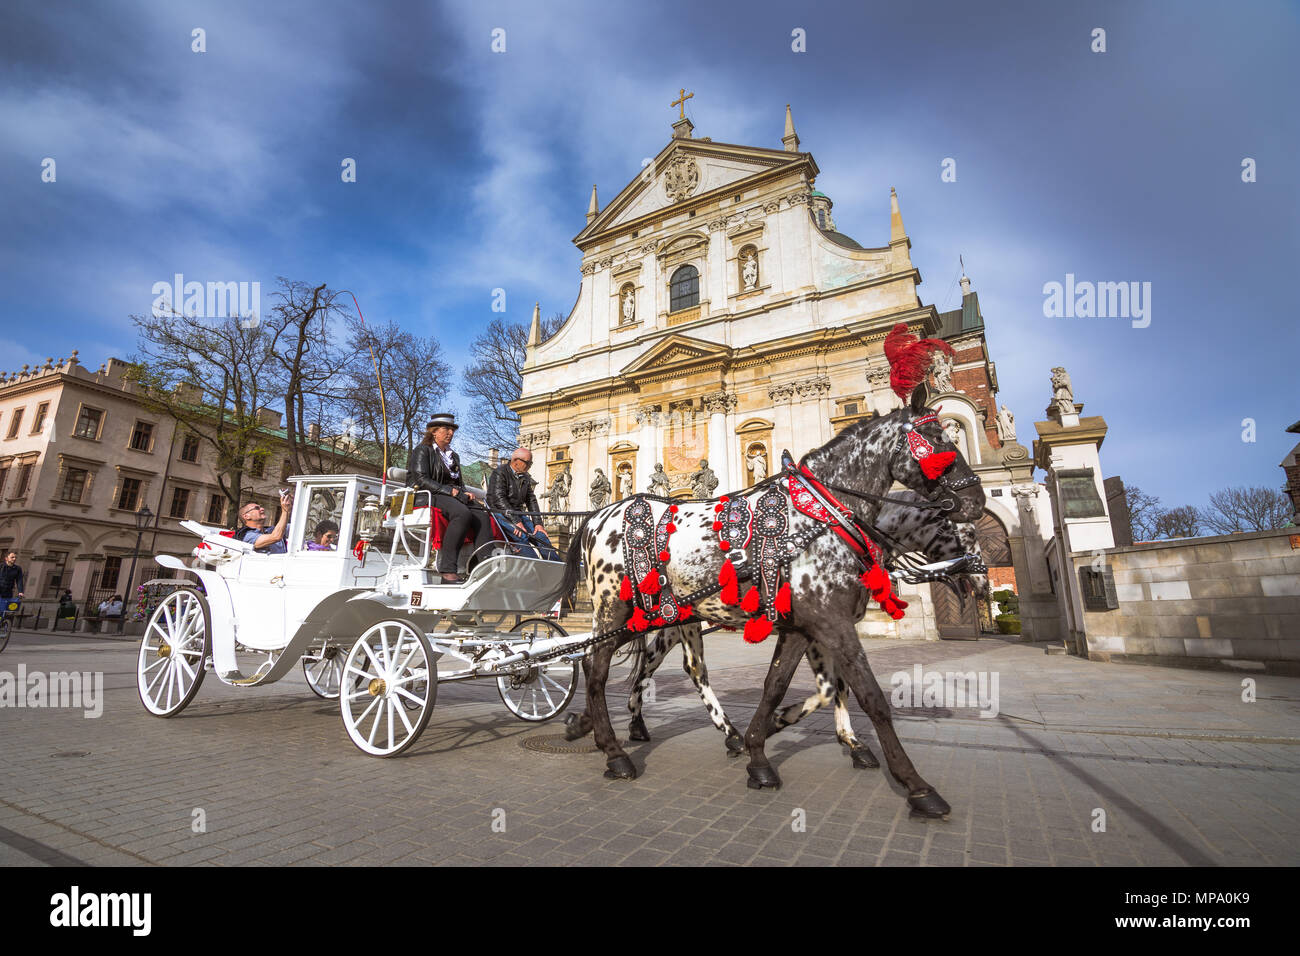 Pferdekutschen in der Altstadt von Krakau, Polen Stockfoto